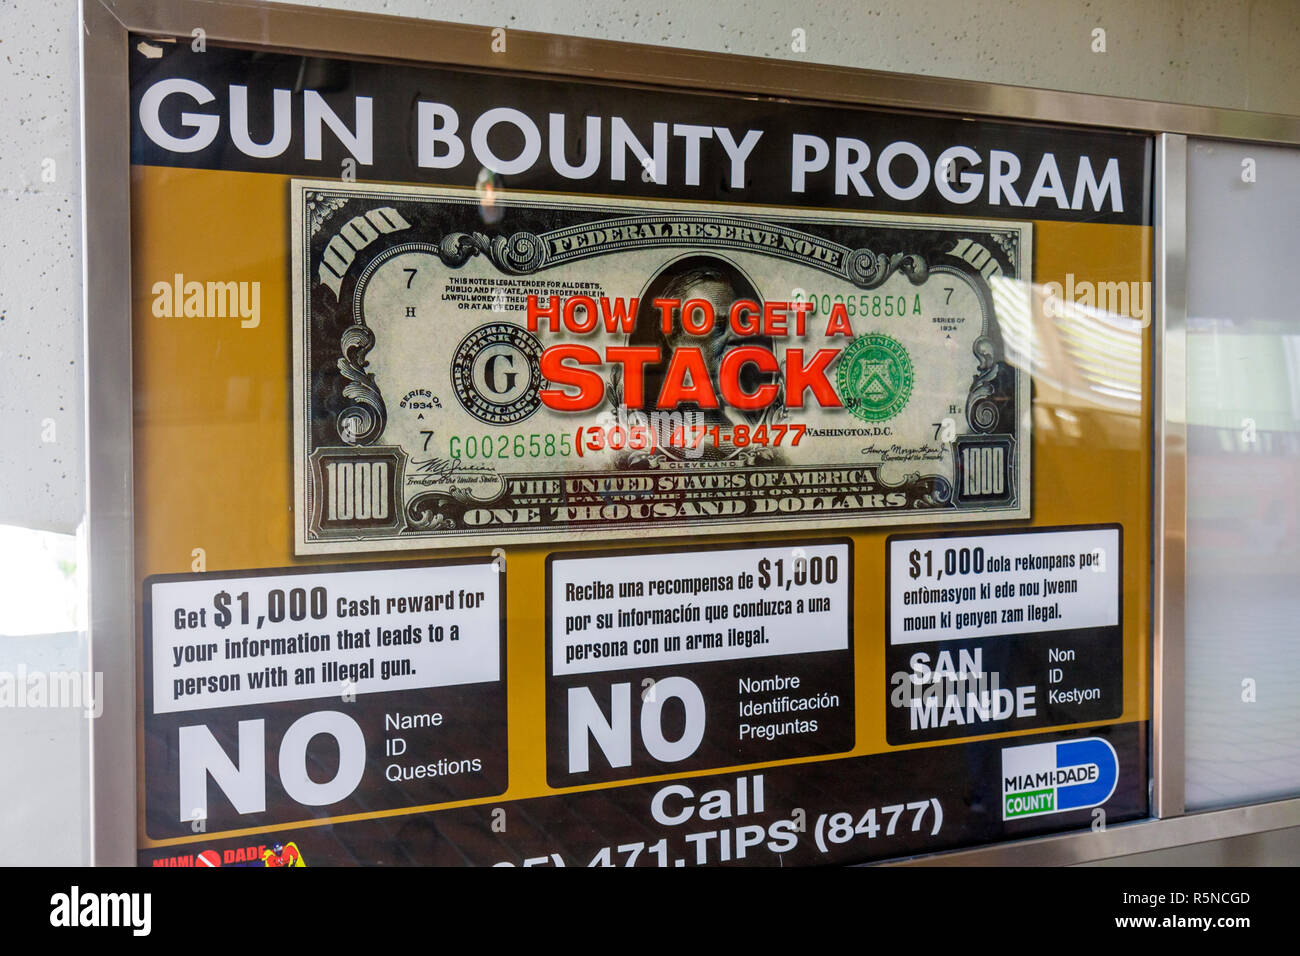 Miami Florida,Allapattah Metrorail Station,Bulletin board,annuncio,programma di bounty pistola,ricompensa,mancia anonima,armi da fuoco illegali,incentivo,FL09092 Foto Stock